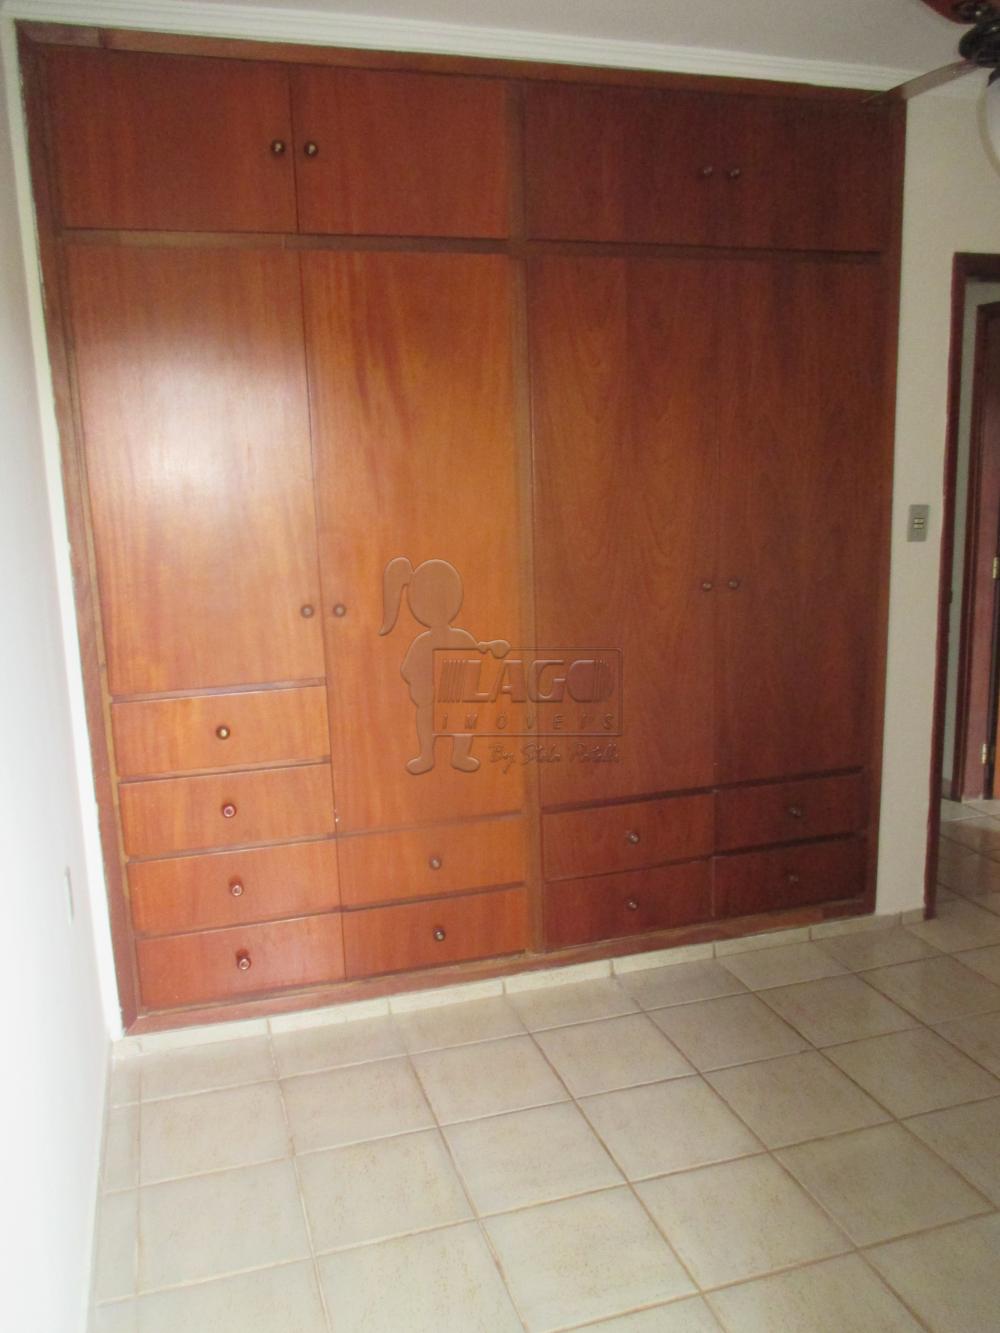 Alugar Apartamentos / Padrão em Ribeirão Preto R$ 1.400,00 - Foto 13